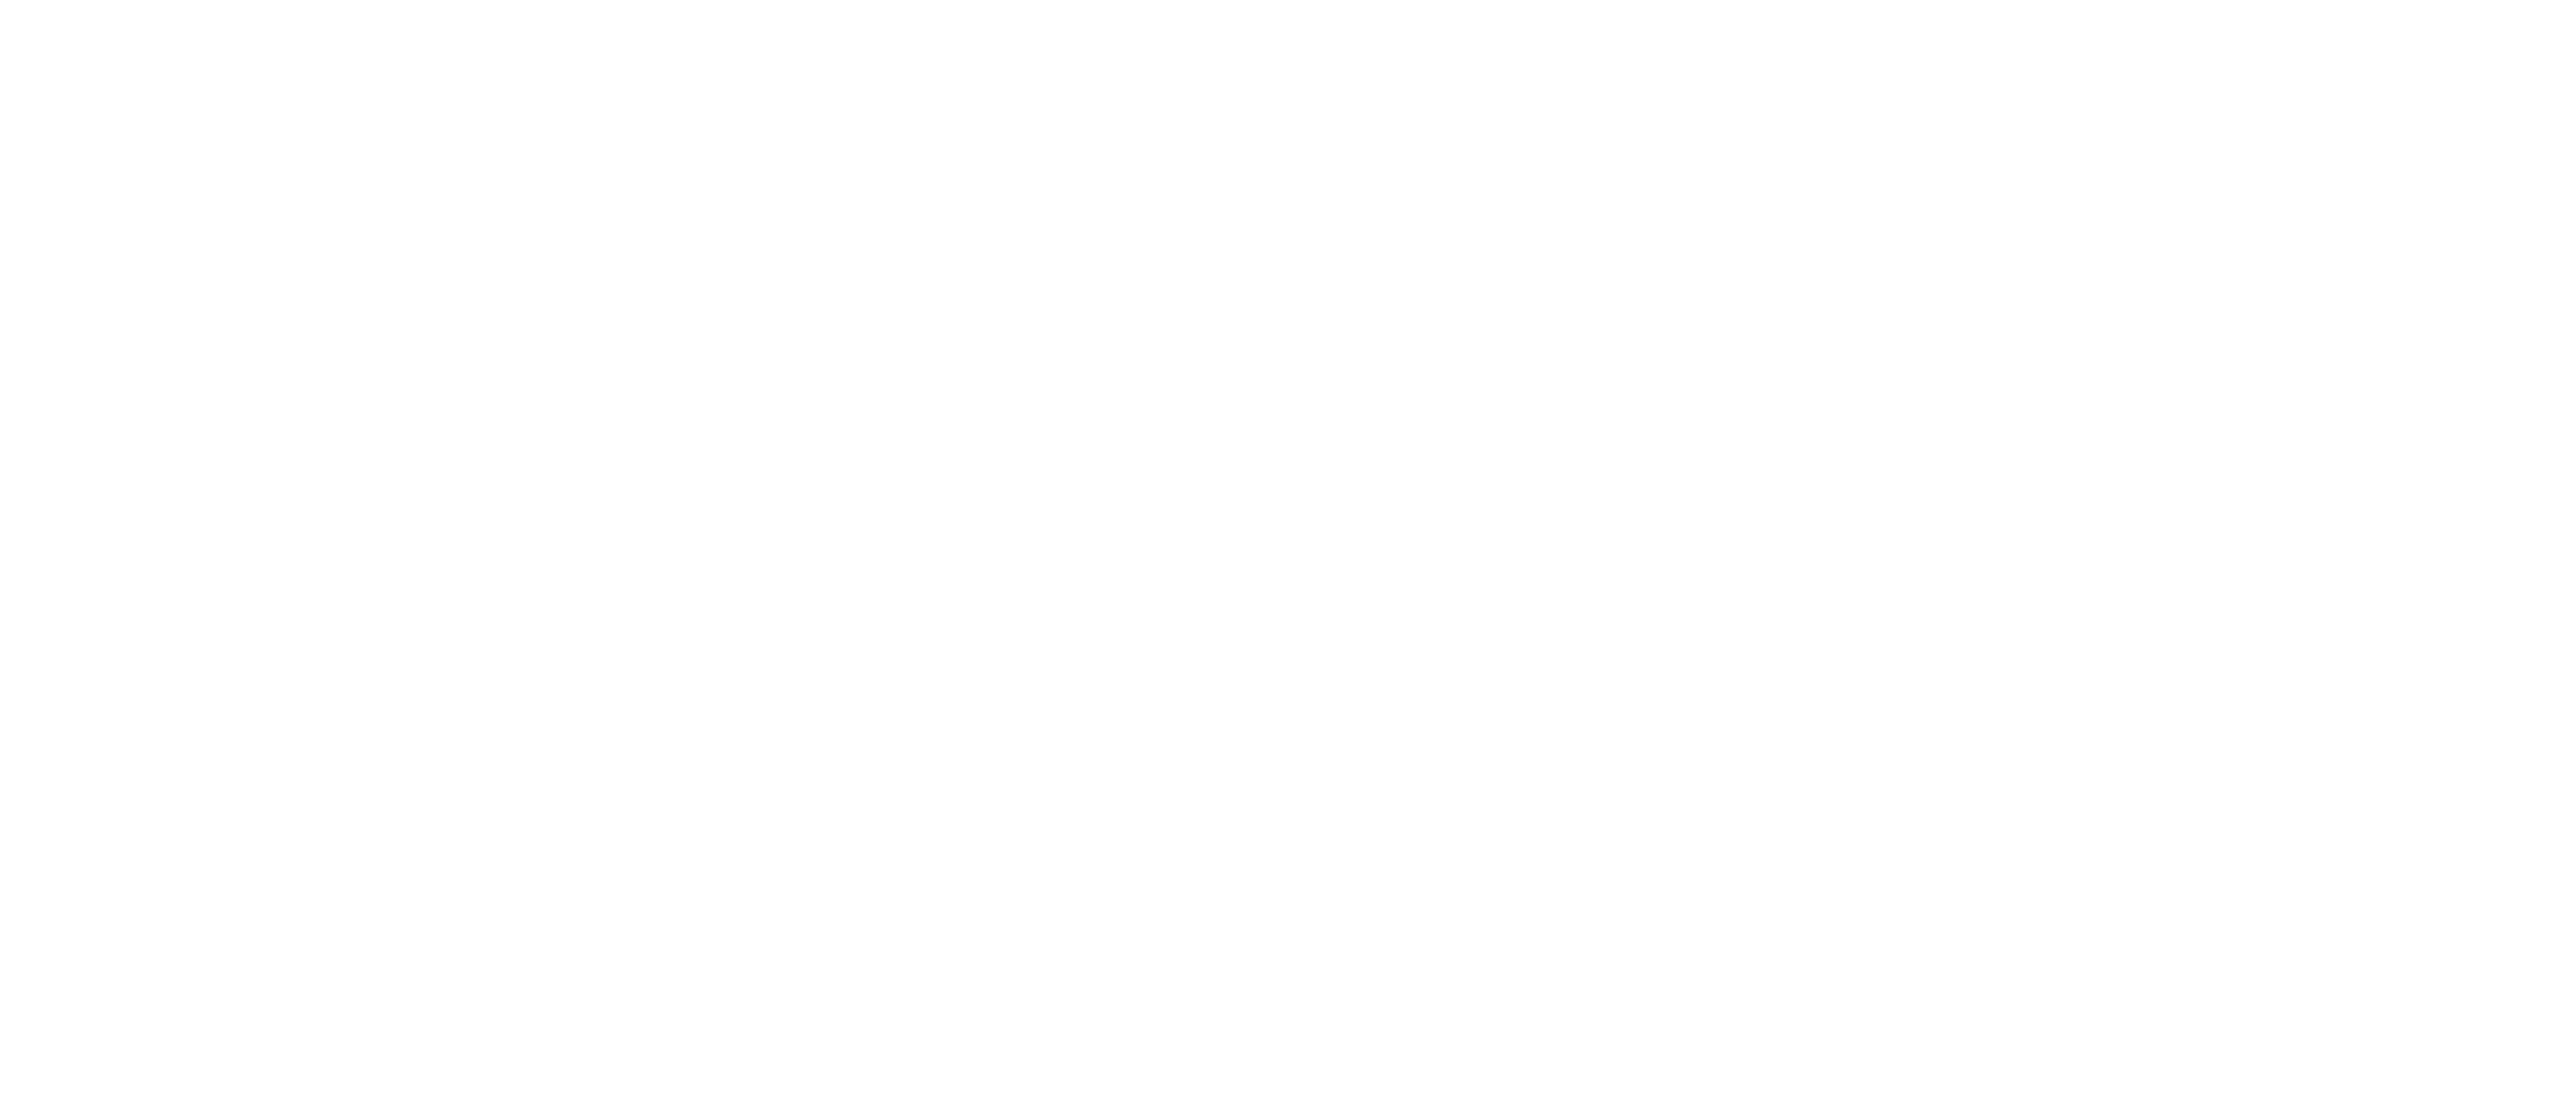 royal airforce logo